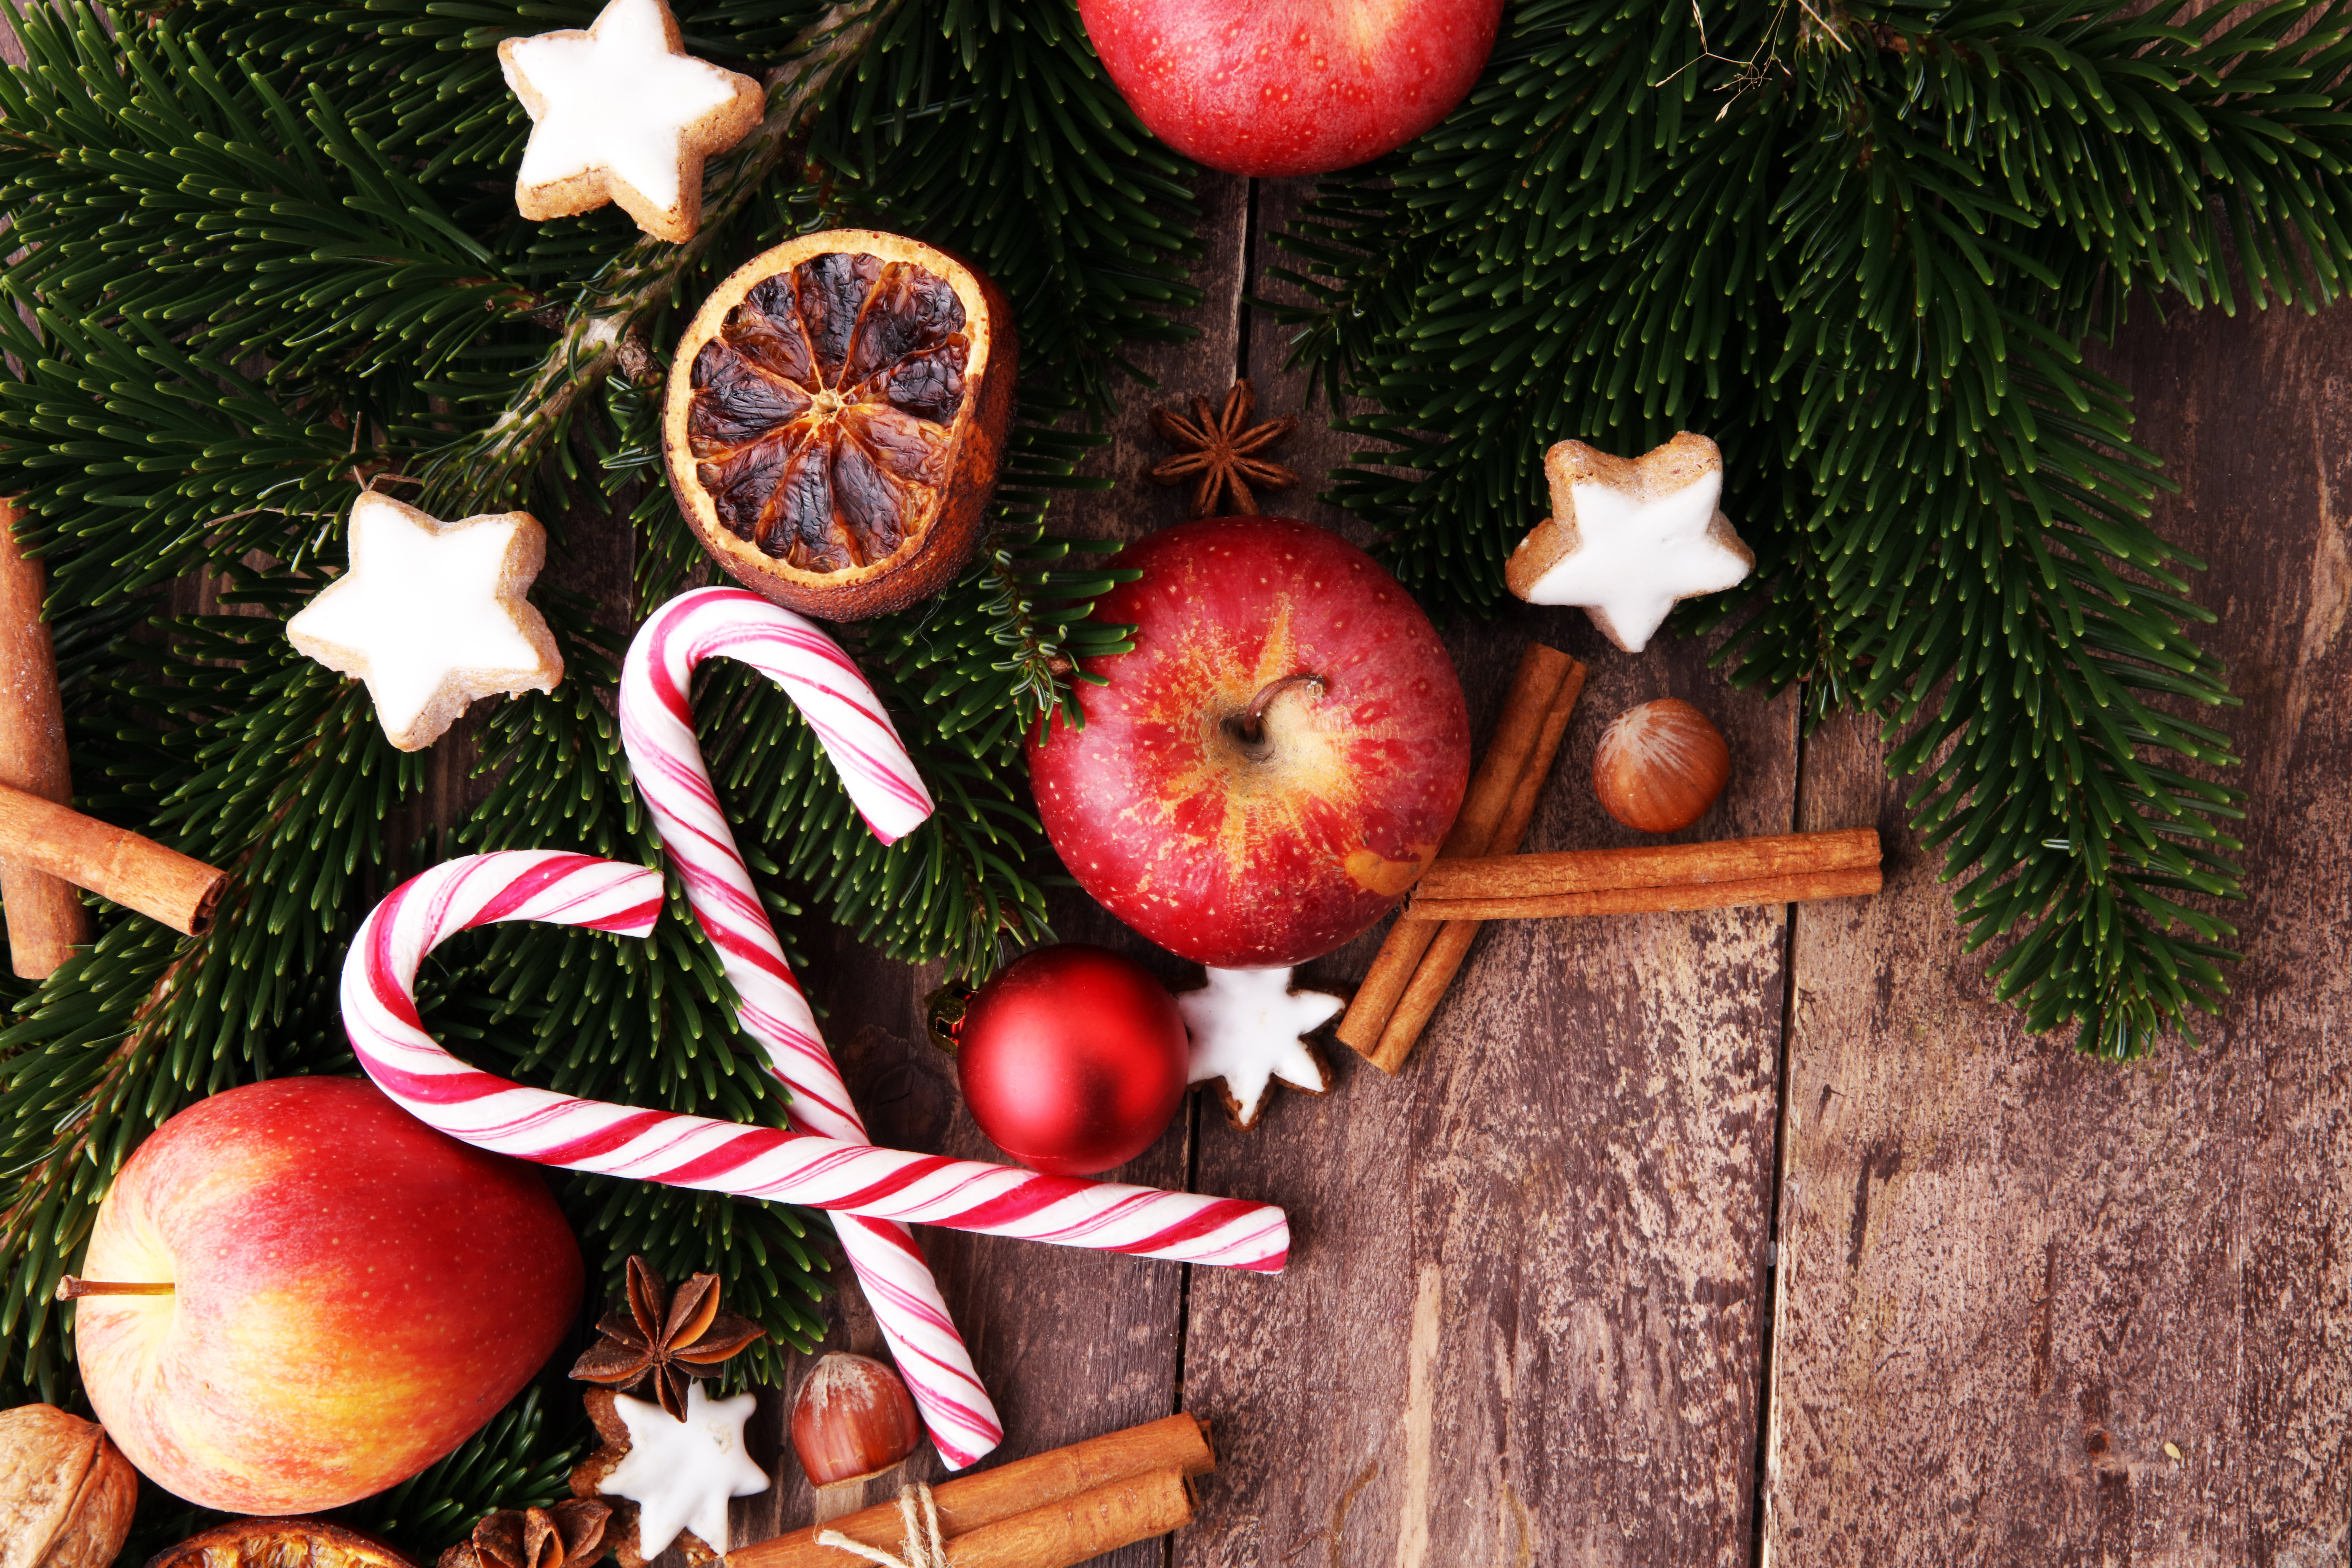 En diciembre se observa la presencia de frutas y flores que con sus características encierran el espíritu navideño. (Foto Prensa Libre: Shutterstock)